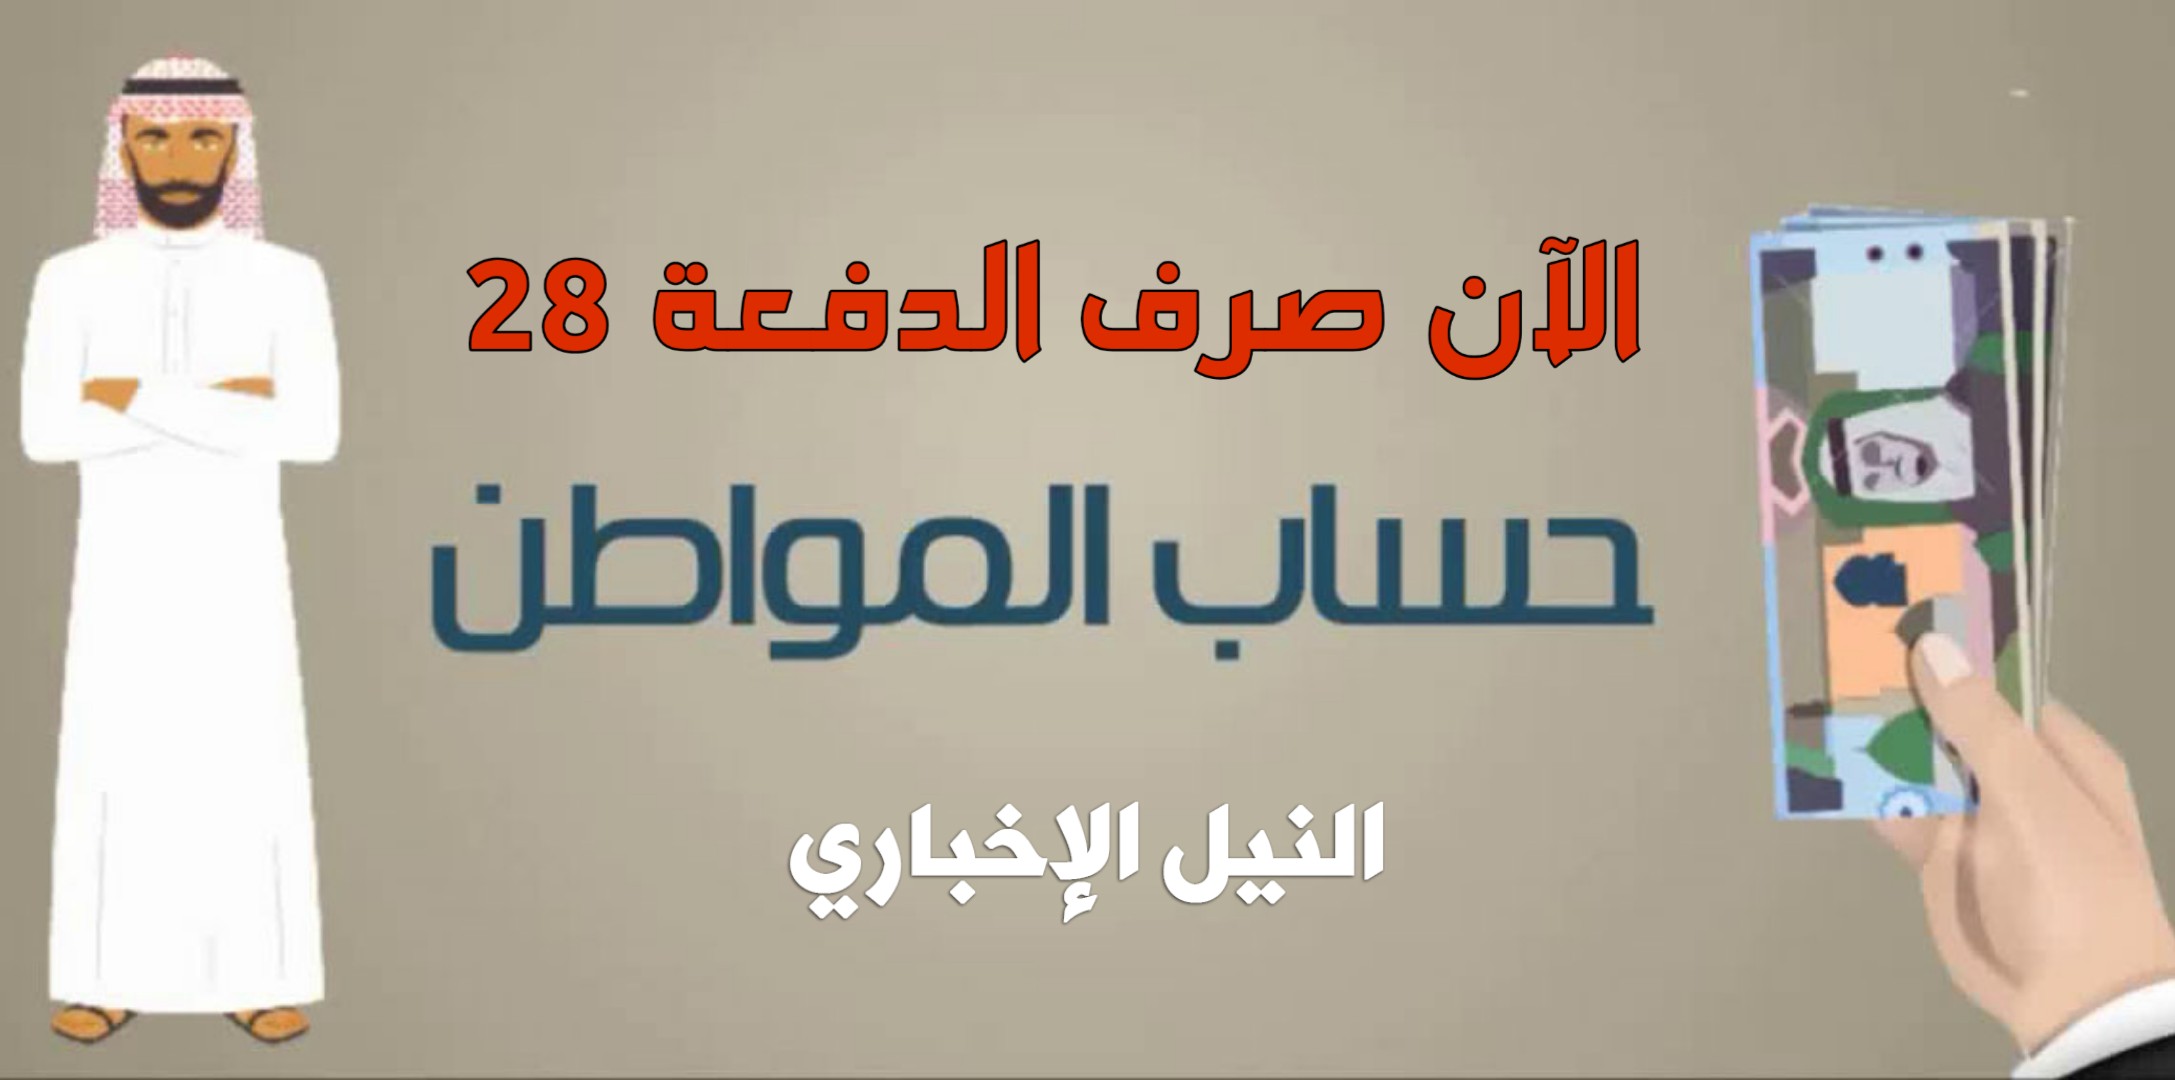 حساب المواطن السعودي: بدأ الآن إيداع الدفعة 28 في حسابات المستفيدين المكتملة طلباتهم